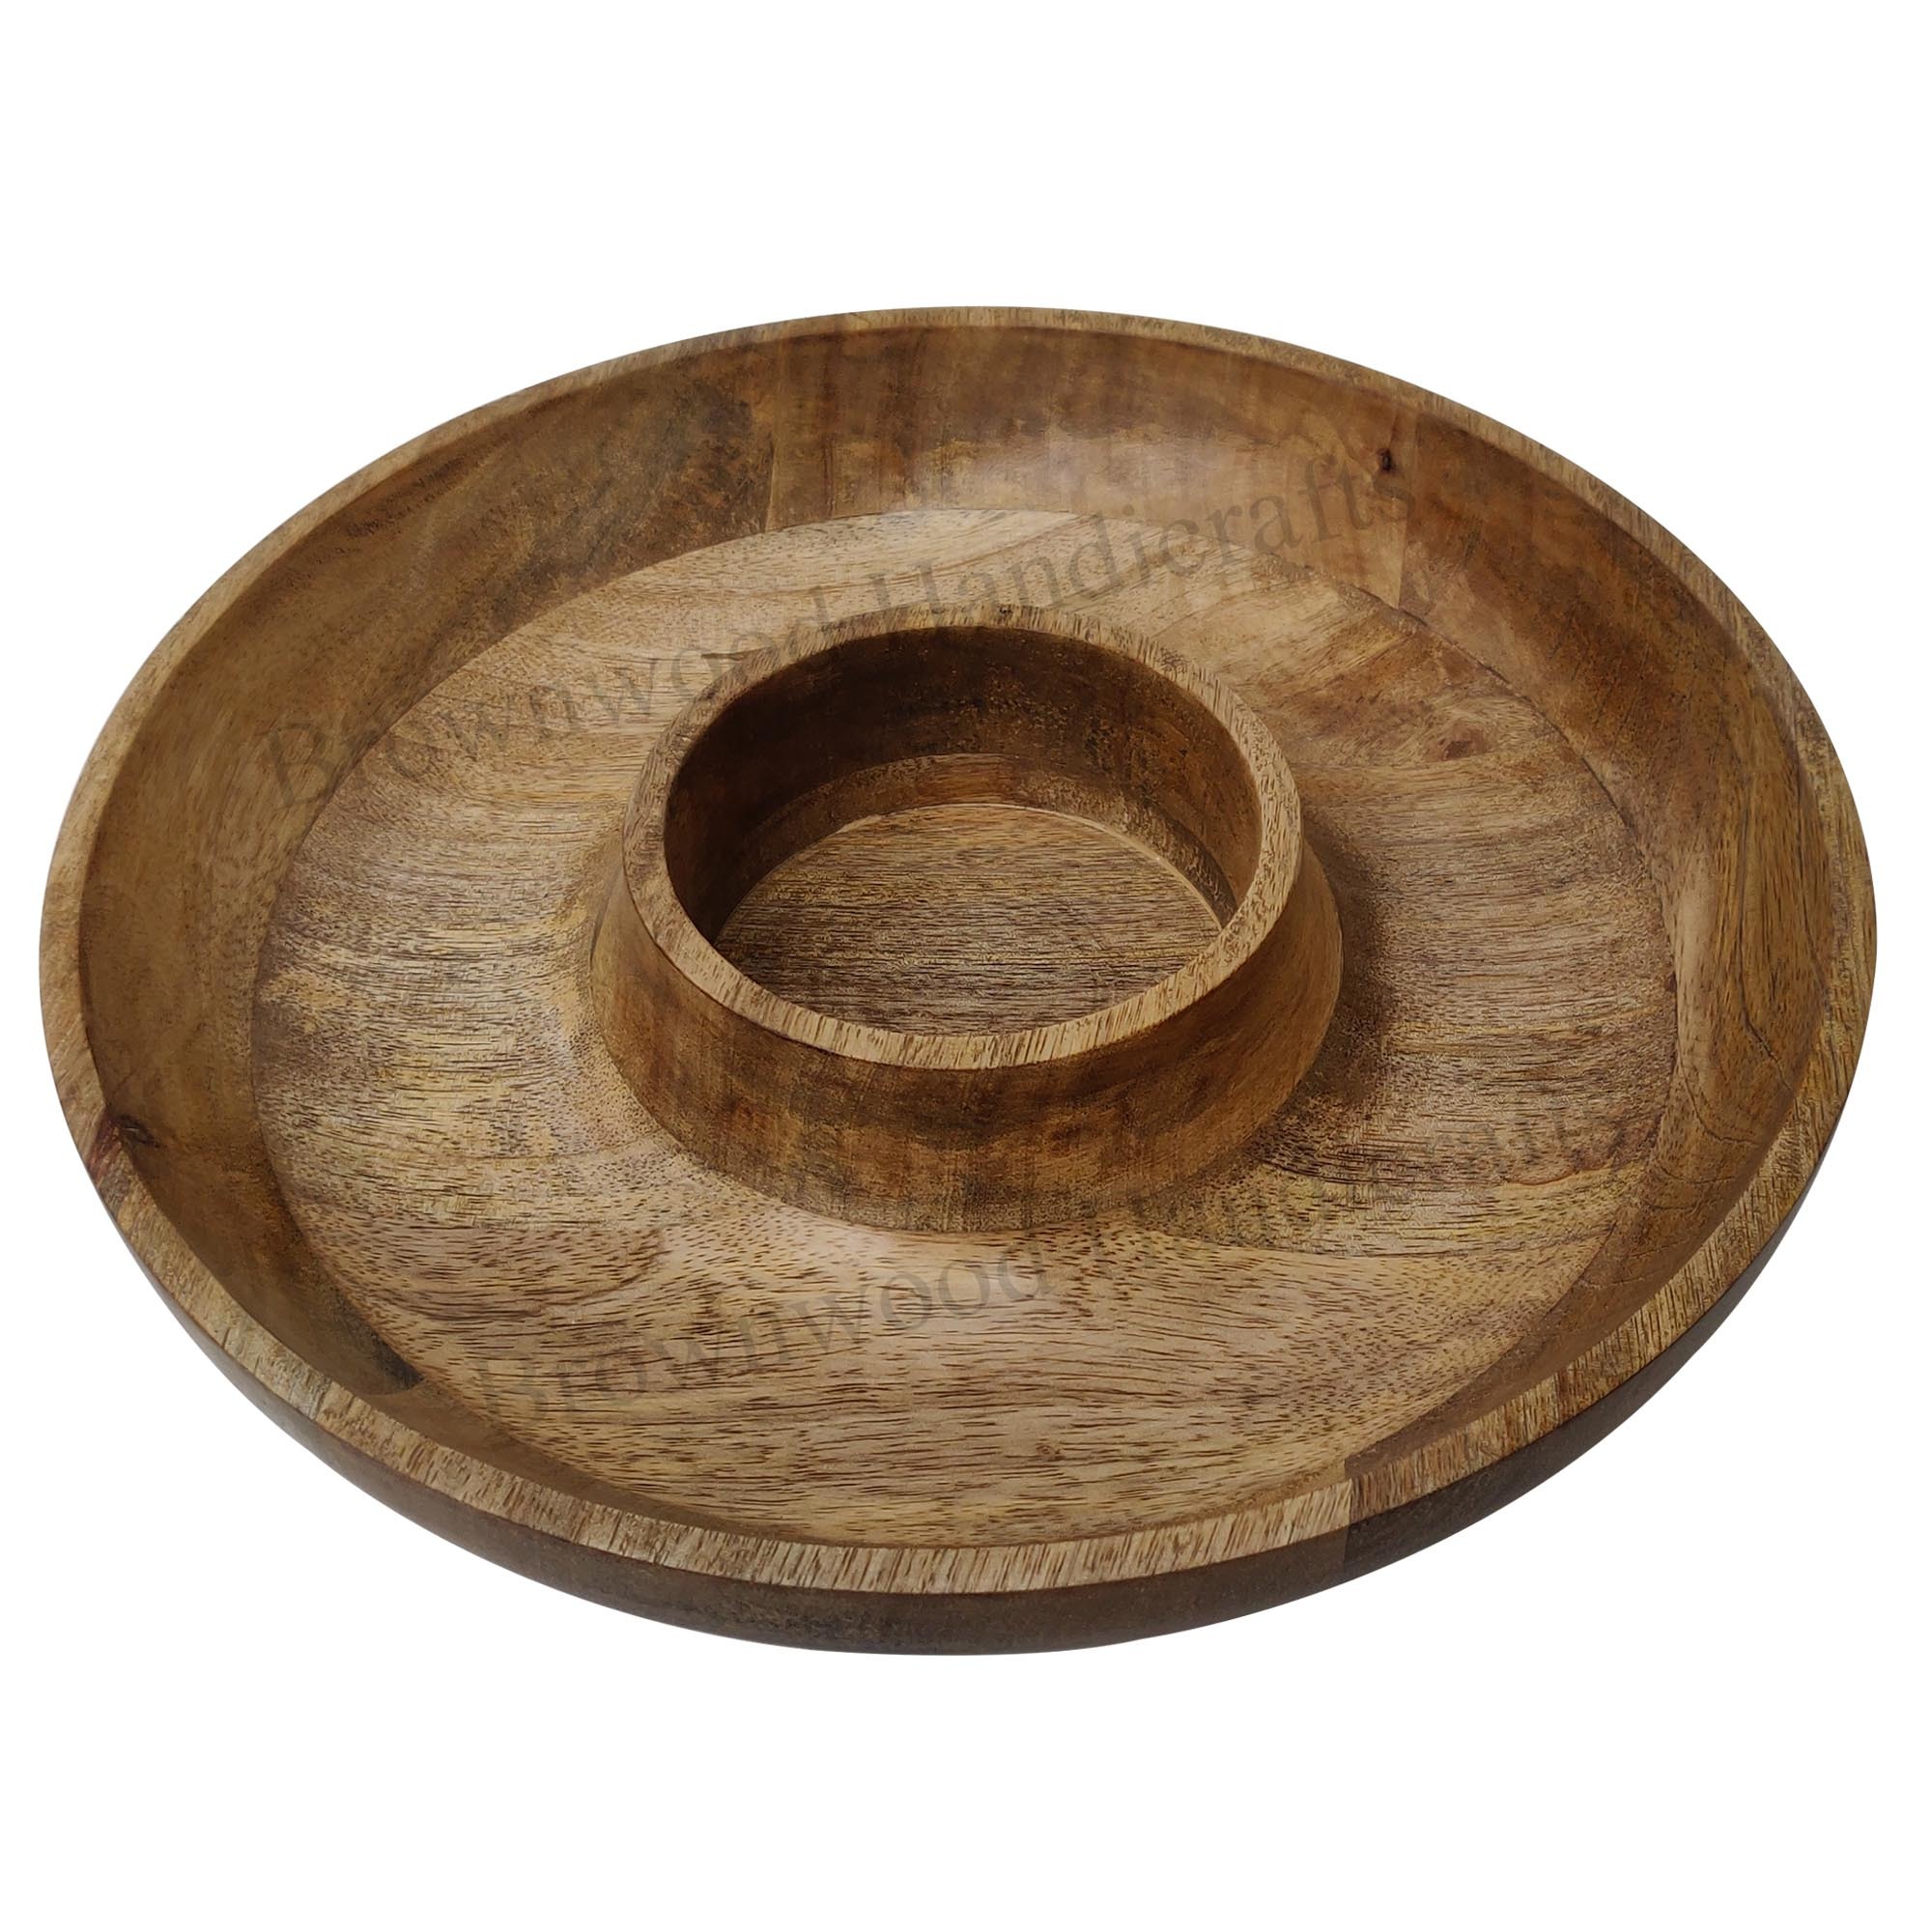 Wooden Serving Bowl